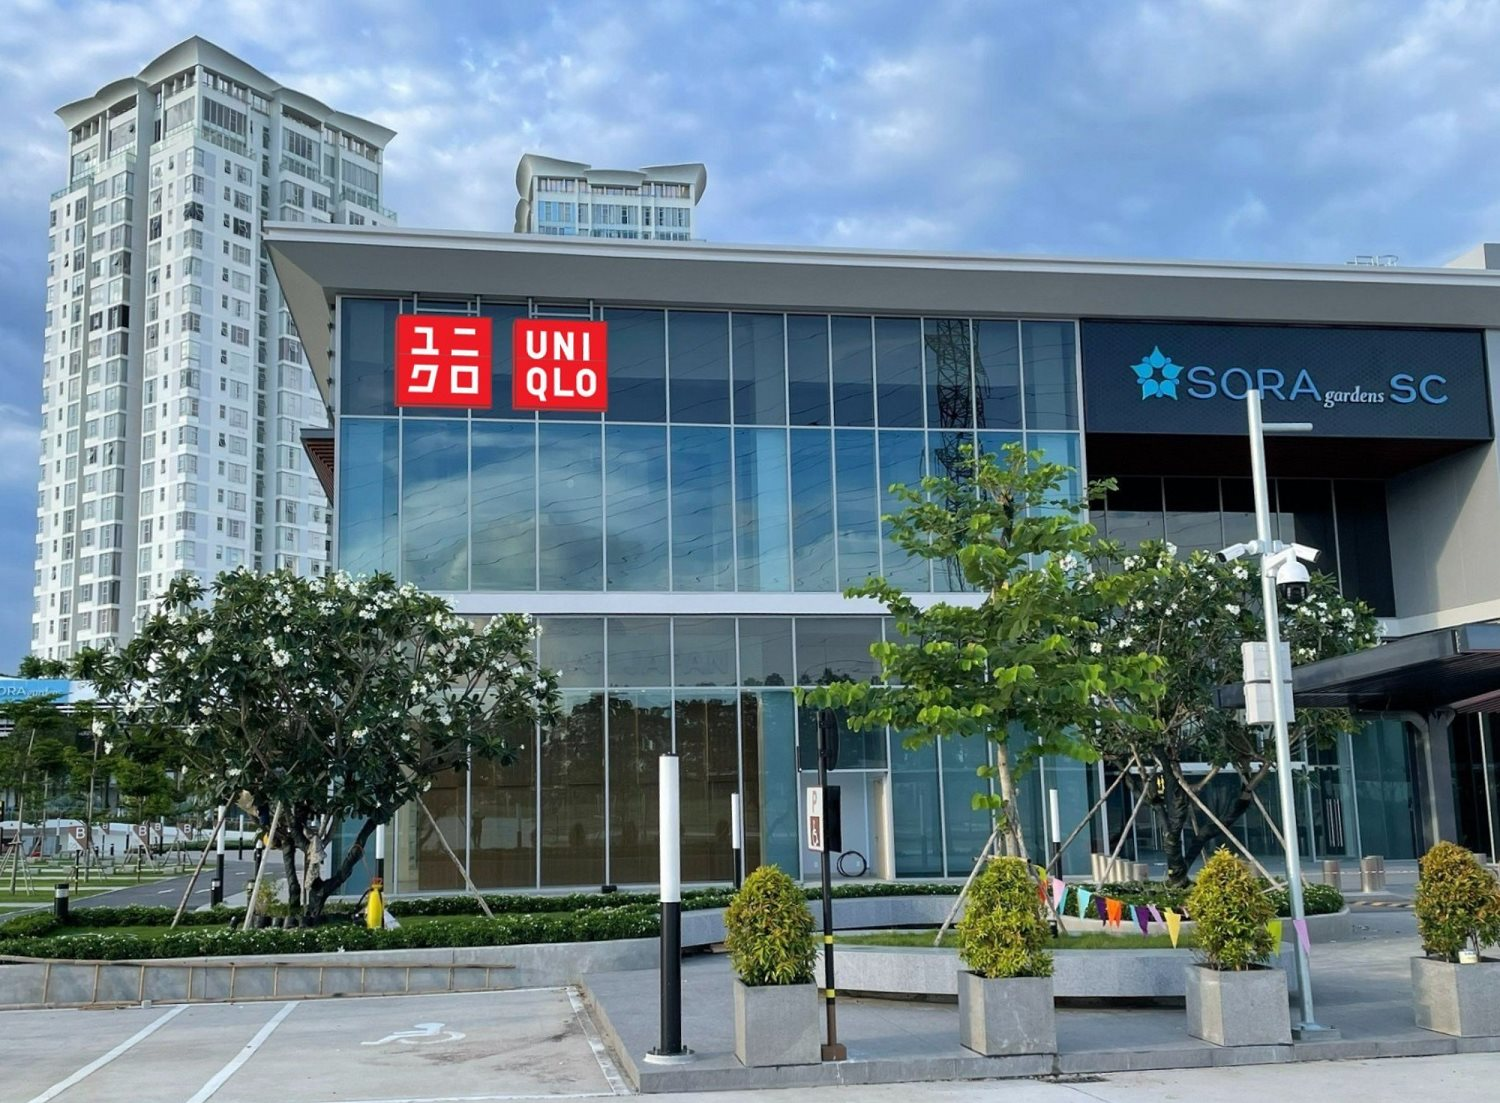 UNIQLO sắp khai trương cửa hàng thứ 19 tại tòa nhà IPH Hà Nội